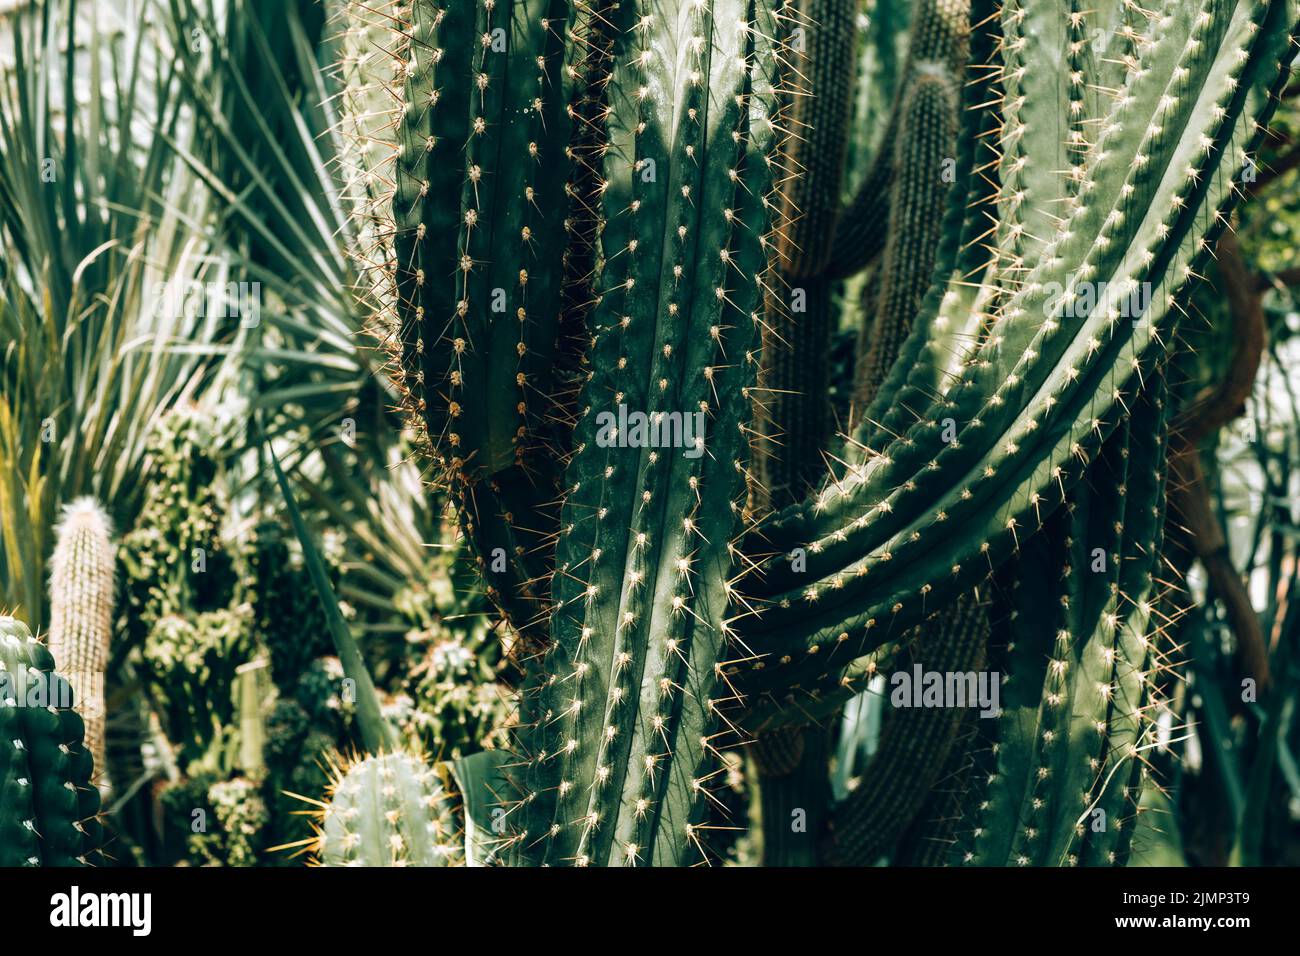 Cactus alti, Cereus repandus, il cactus peruviano di mele, conosciuto anche come cactus gigante del randello, cactus della barriera, cadushi e kayak. Foto Stock